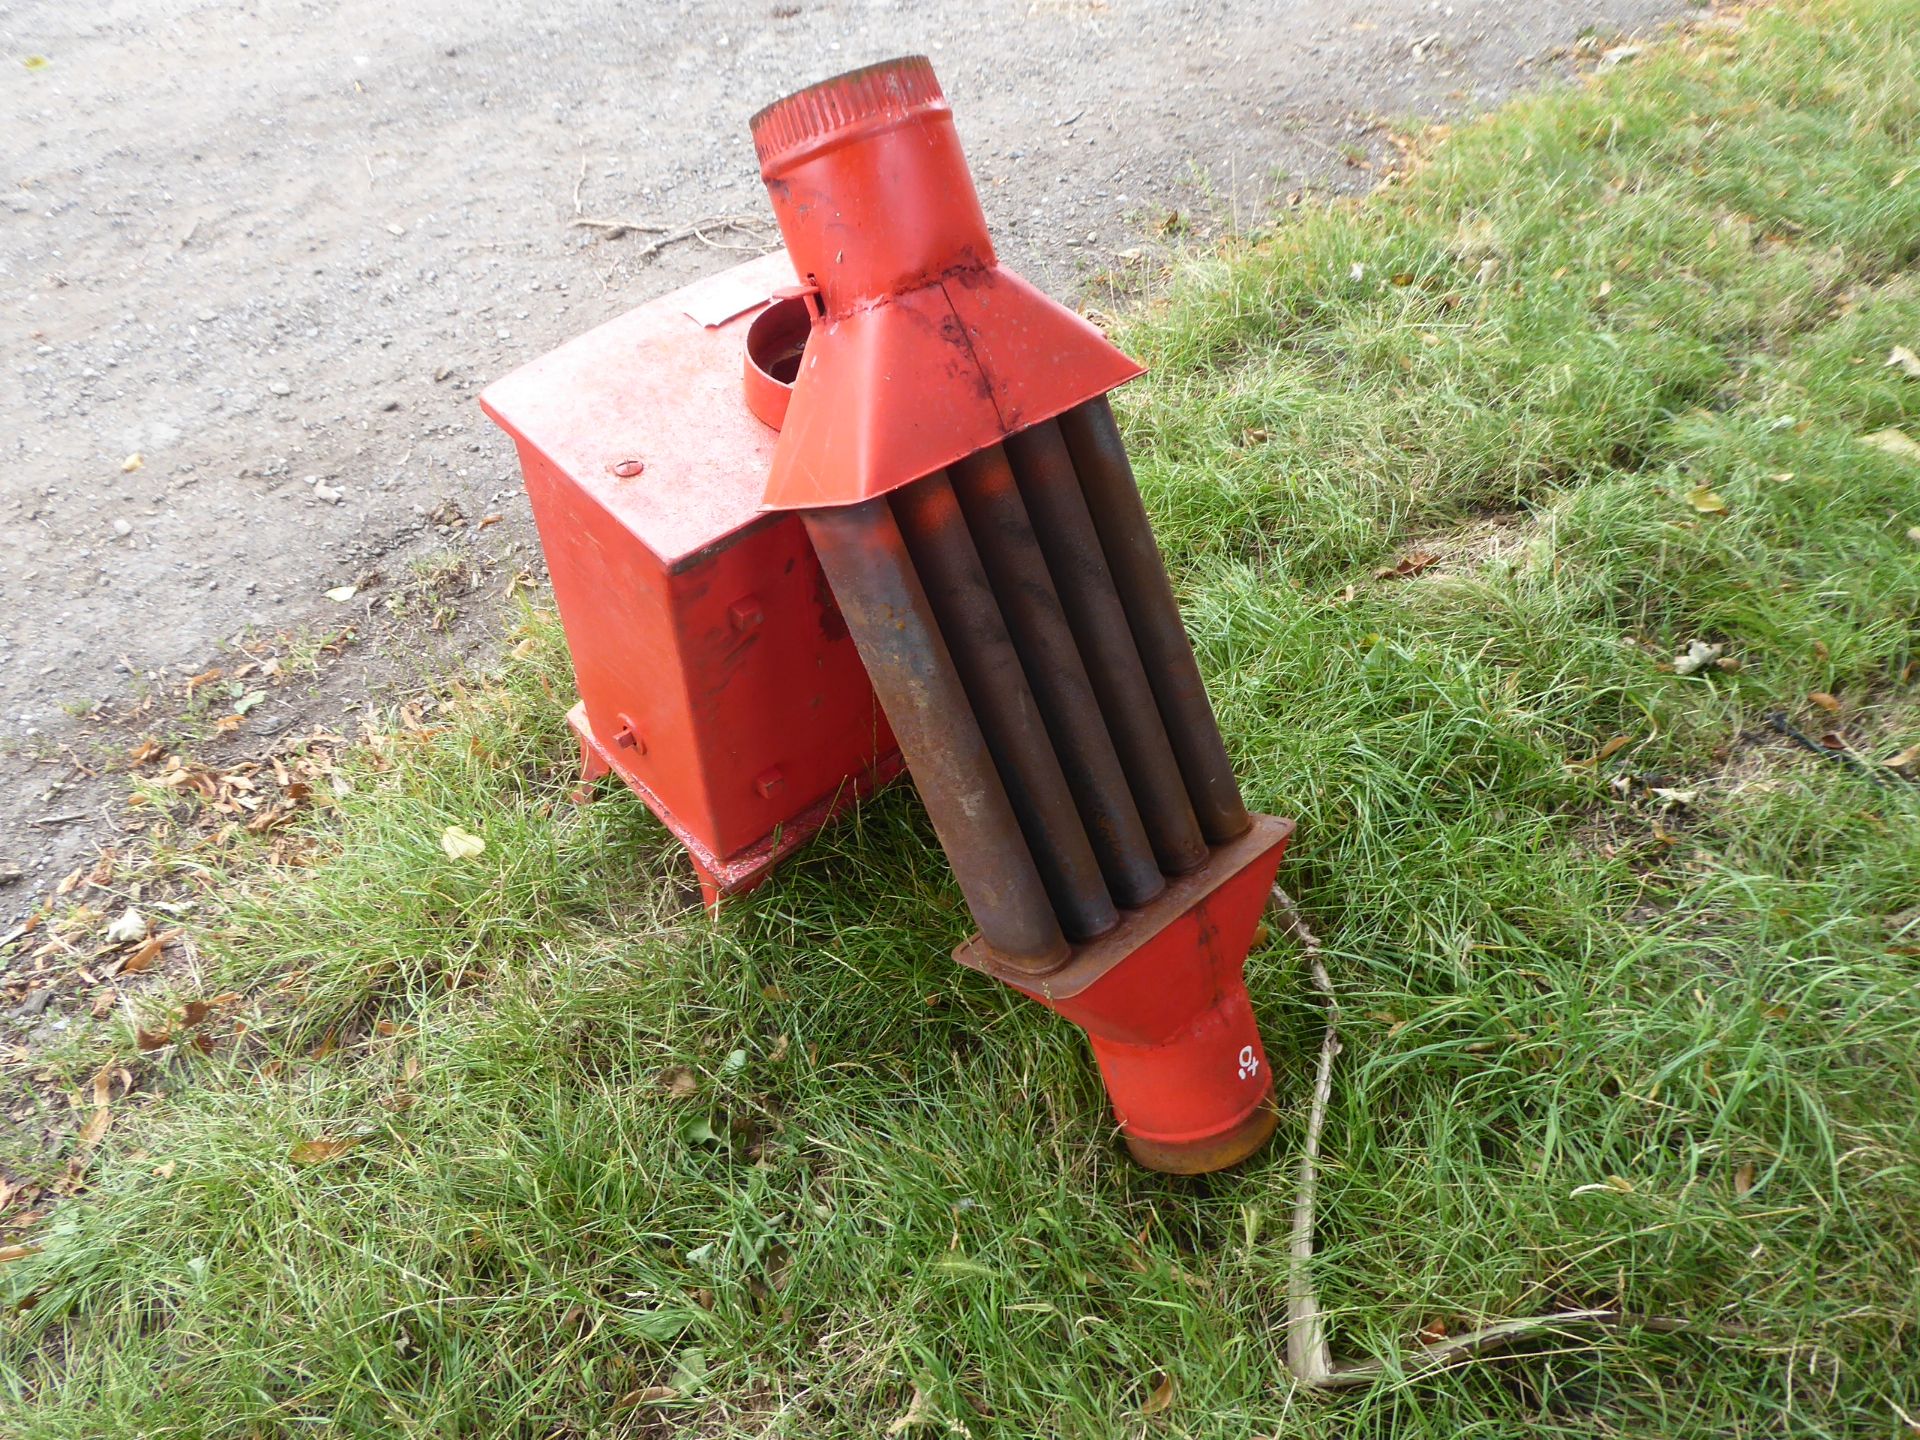 Log burner with home made radiator NO VAT - Image 2 of 2